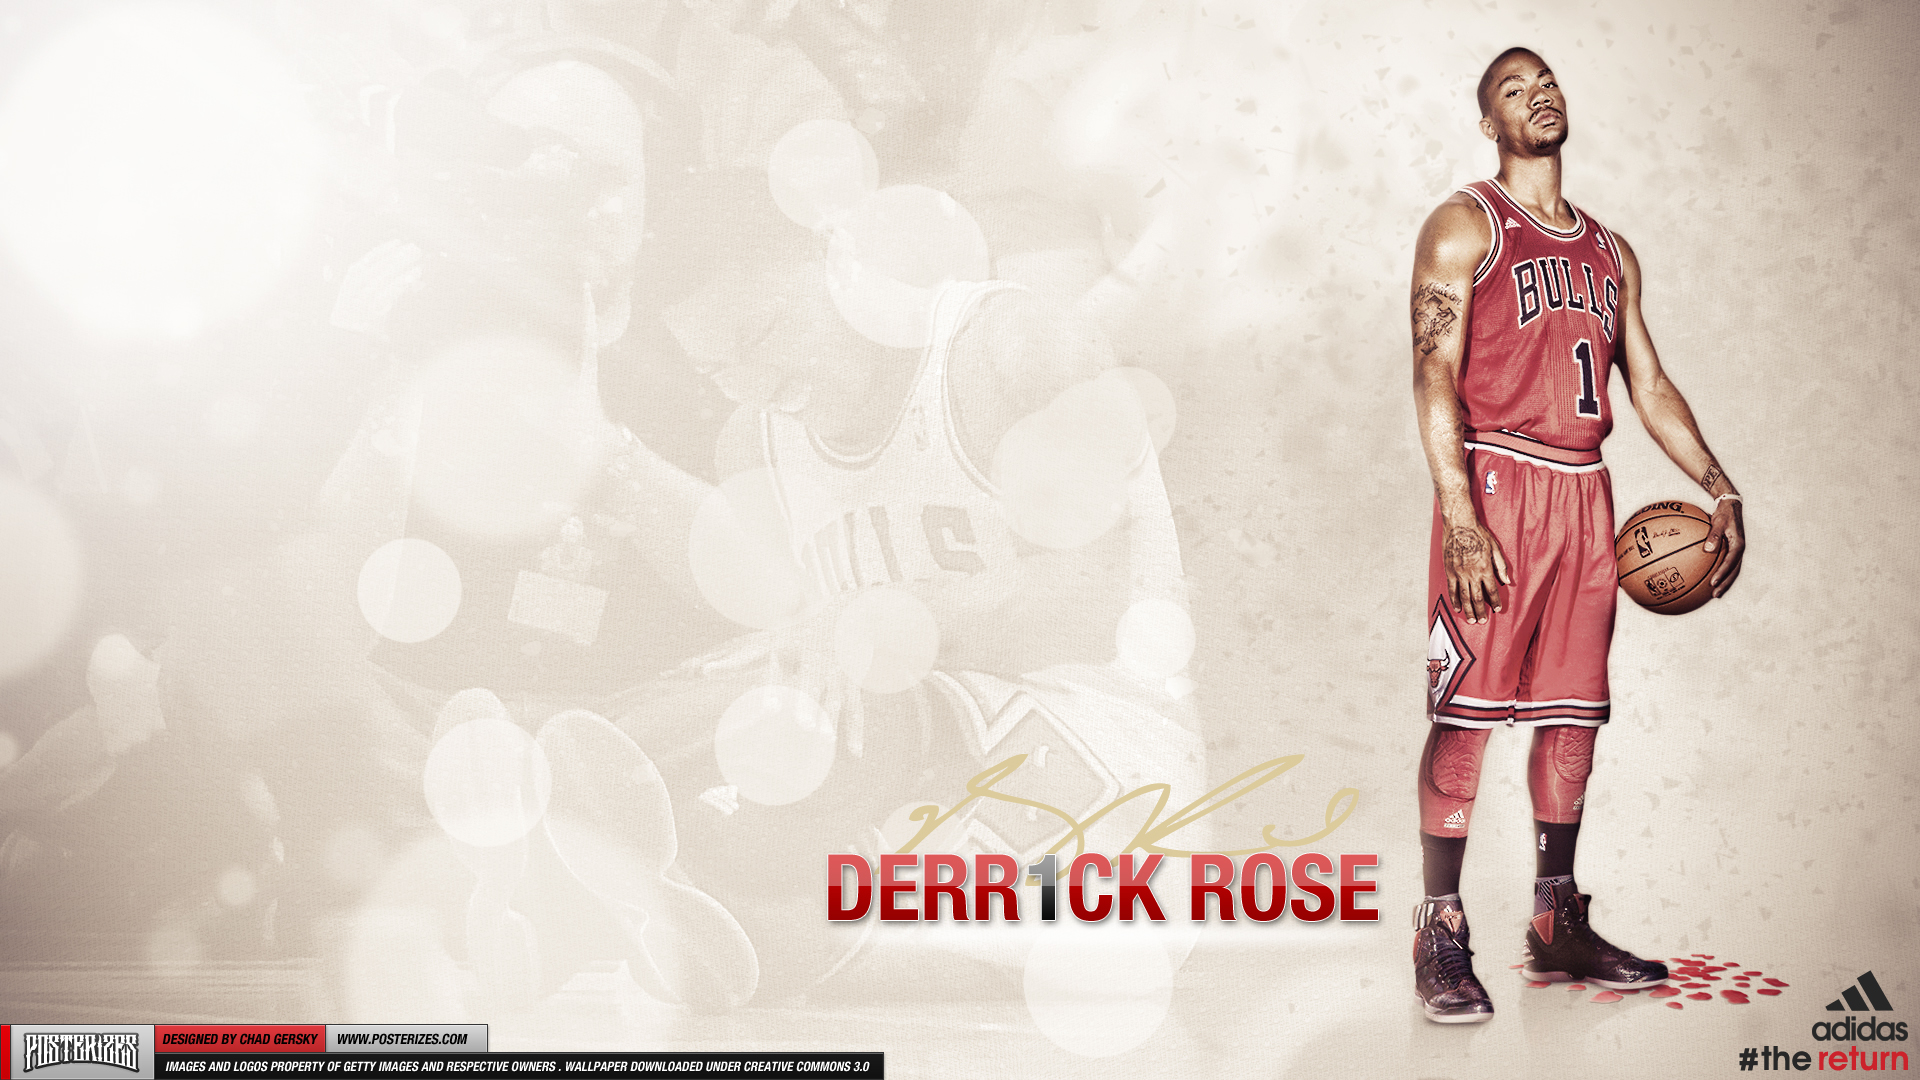 derrick rose wallpaper iphone,font,vestito formale,fashion design,giocatore di pallacanestro